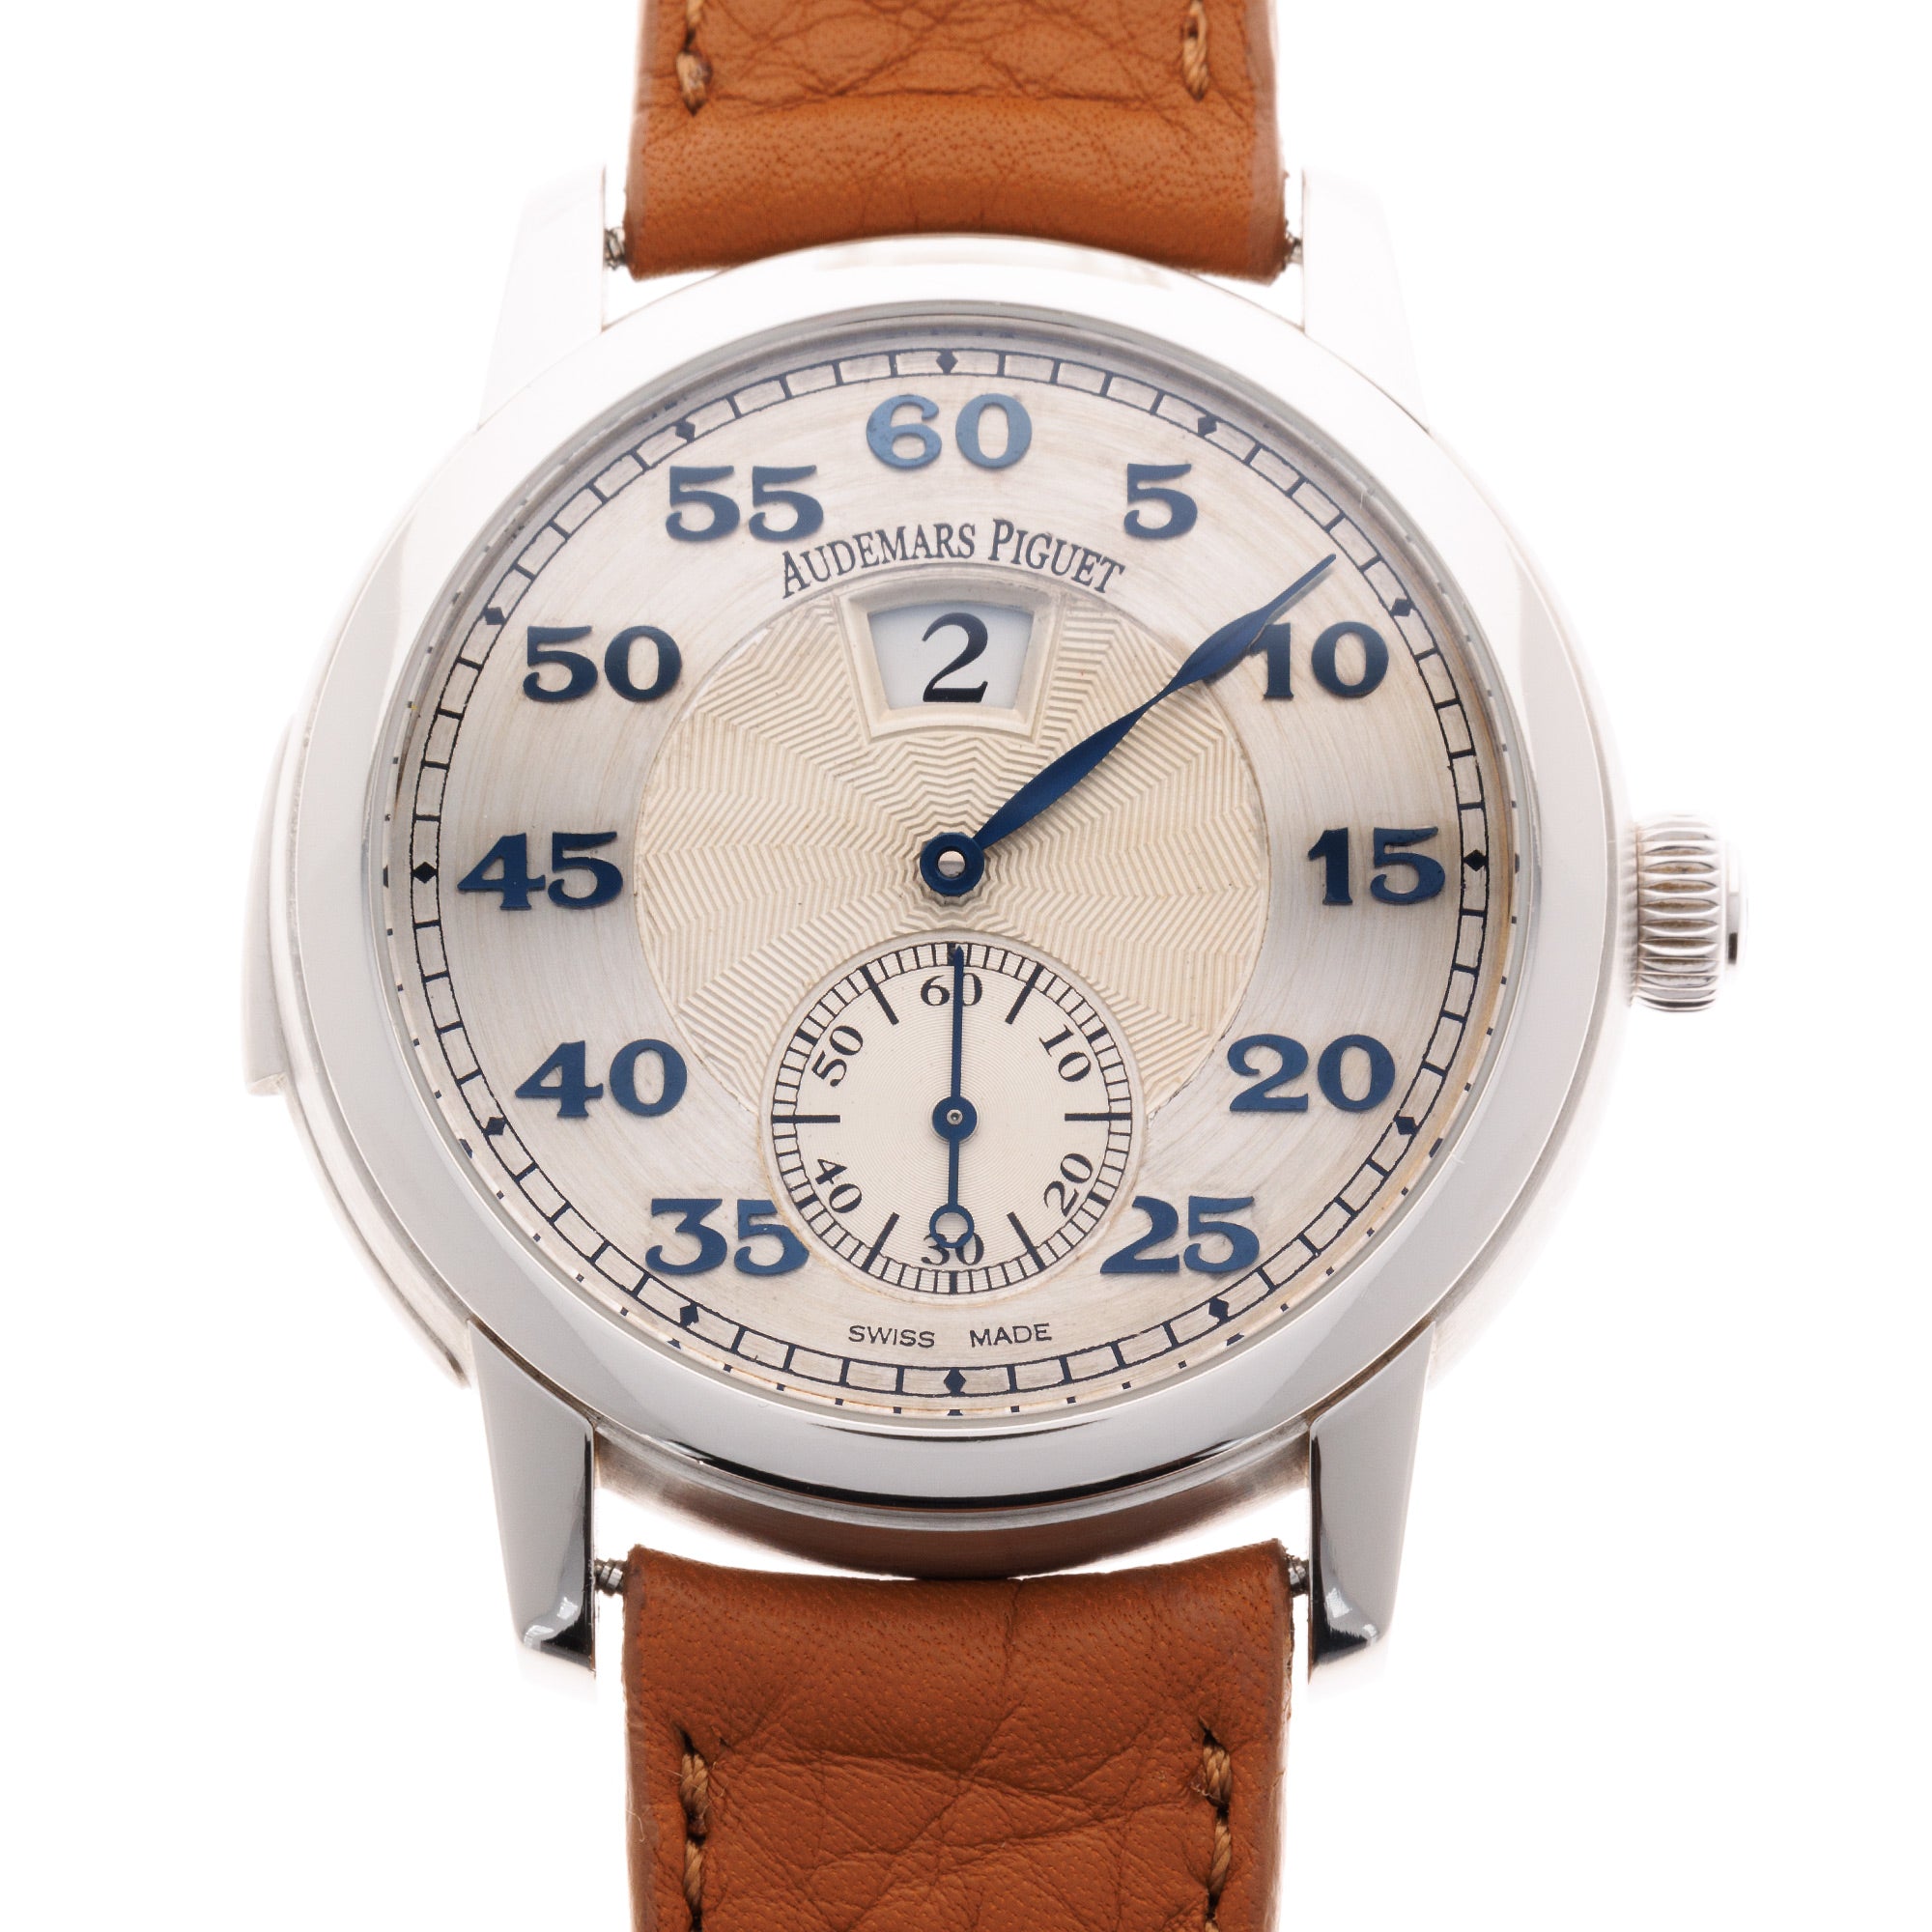 Audemars Piguet - Audemars Piguet Platinum Jump Hour Minute Repeater Ref. 26151 - The Keystone Watches